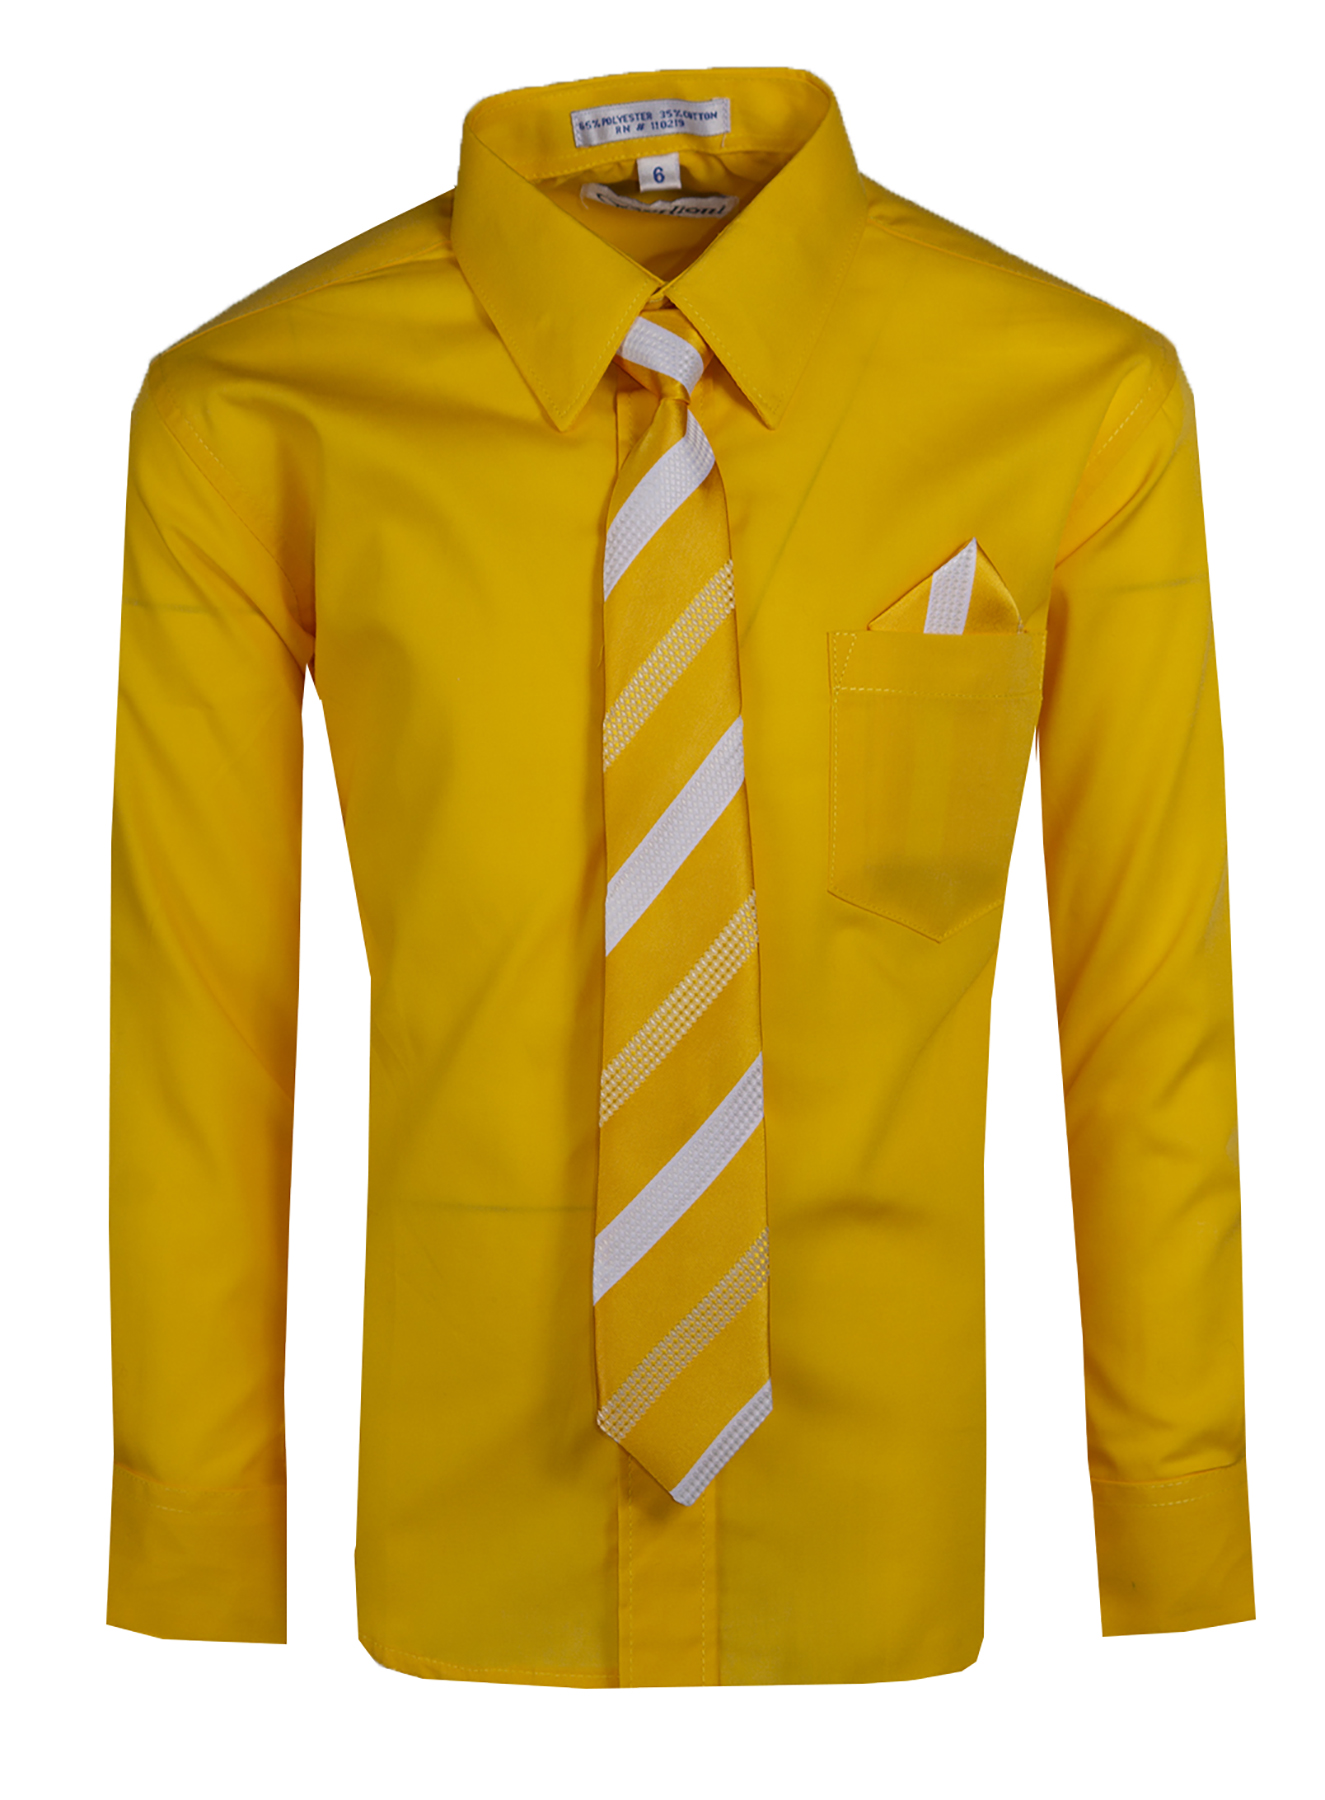 BERLIONI Boys Canary Yellow Dress Shirt ...